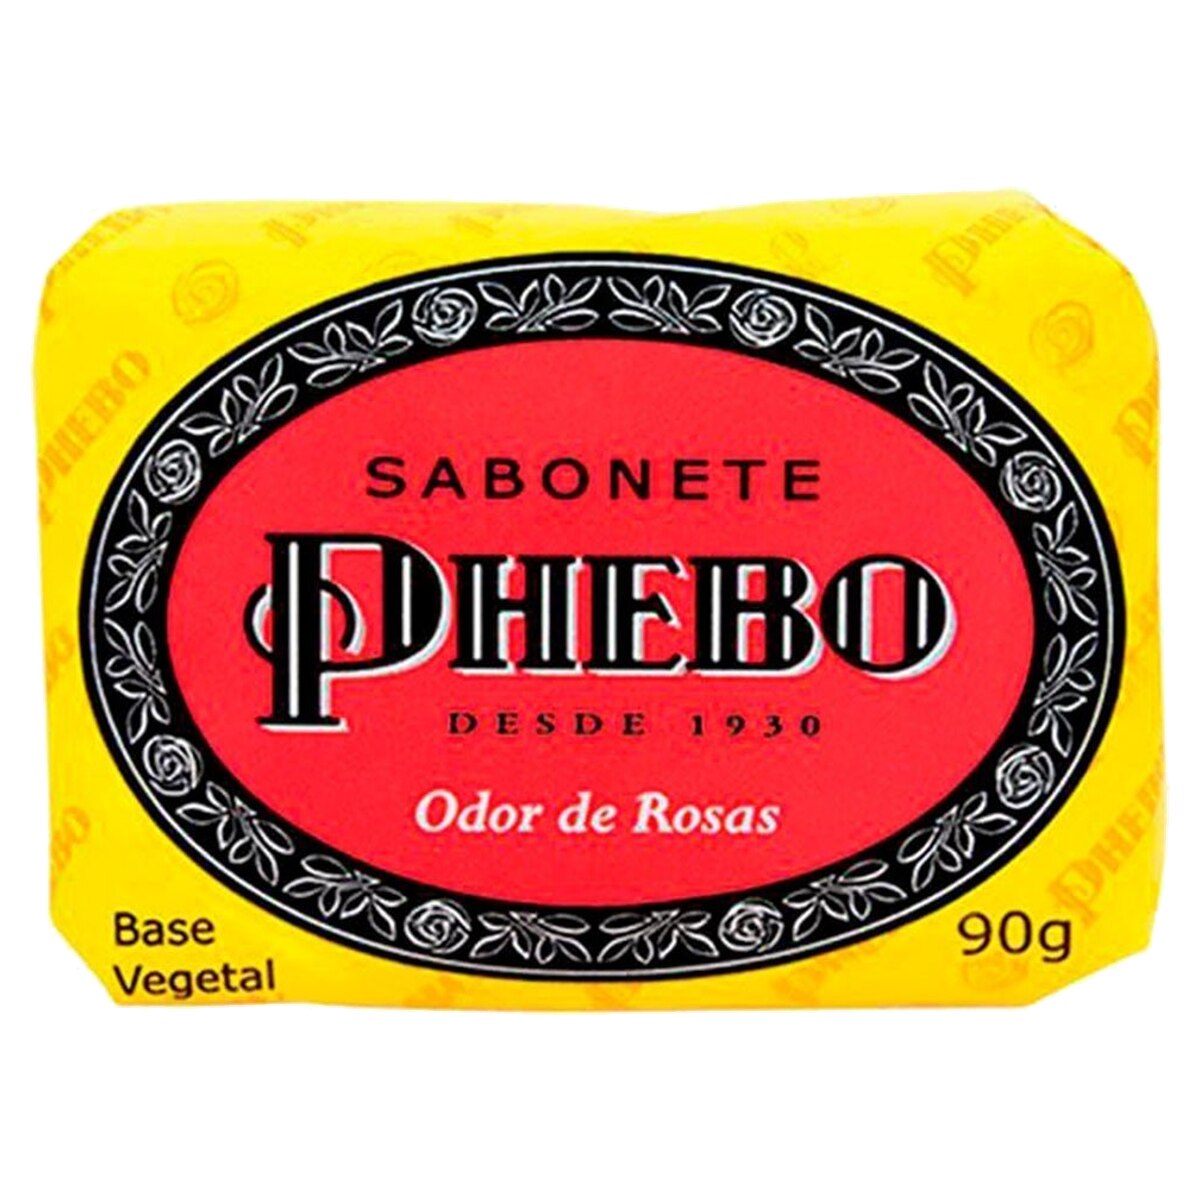 Sabonete em Barra Phebo Odor de Rosas 90g